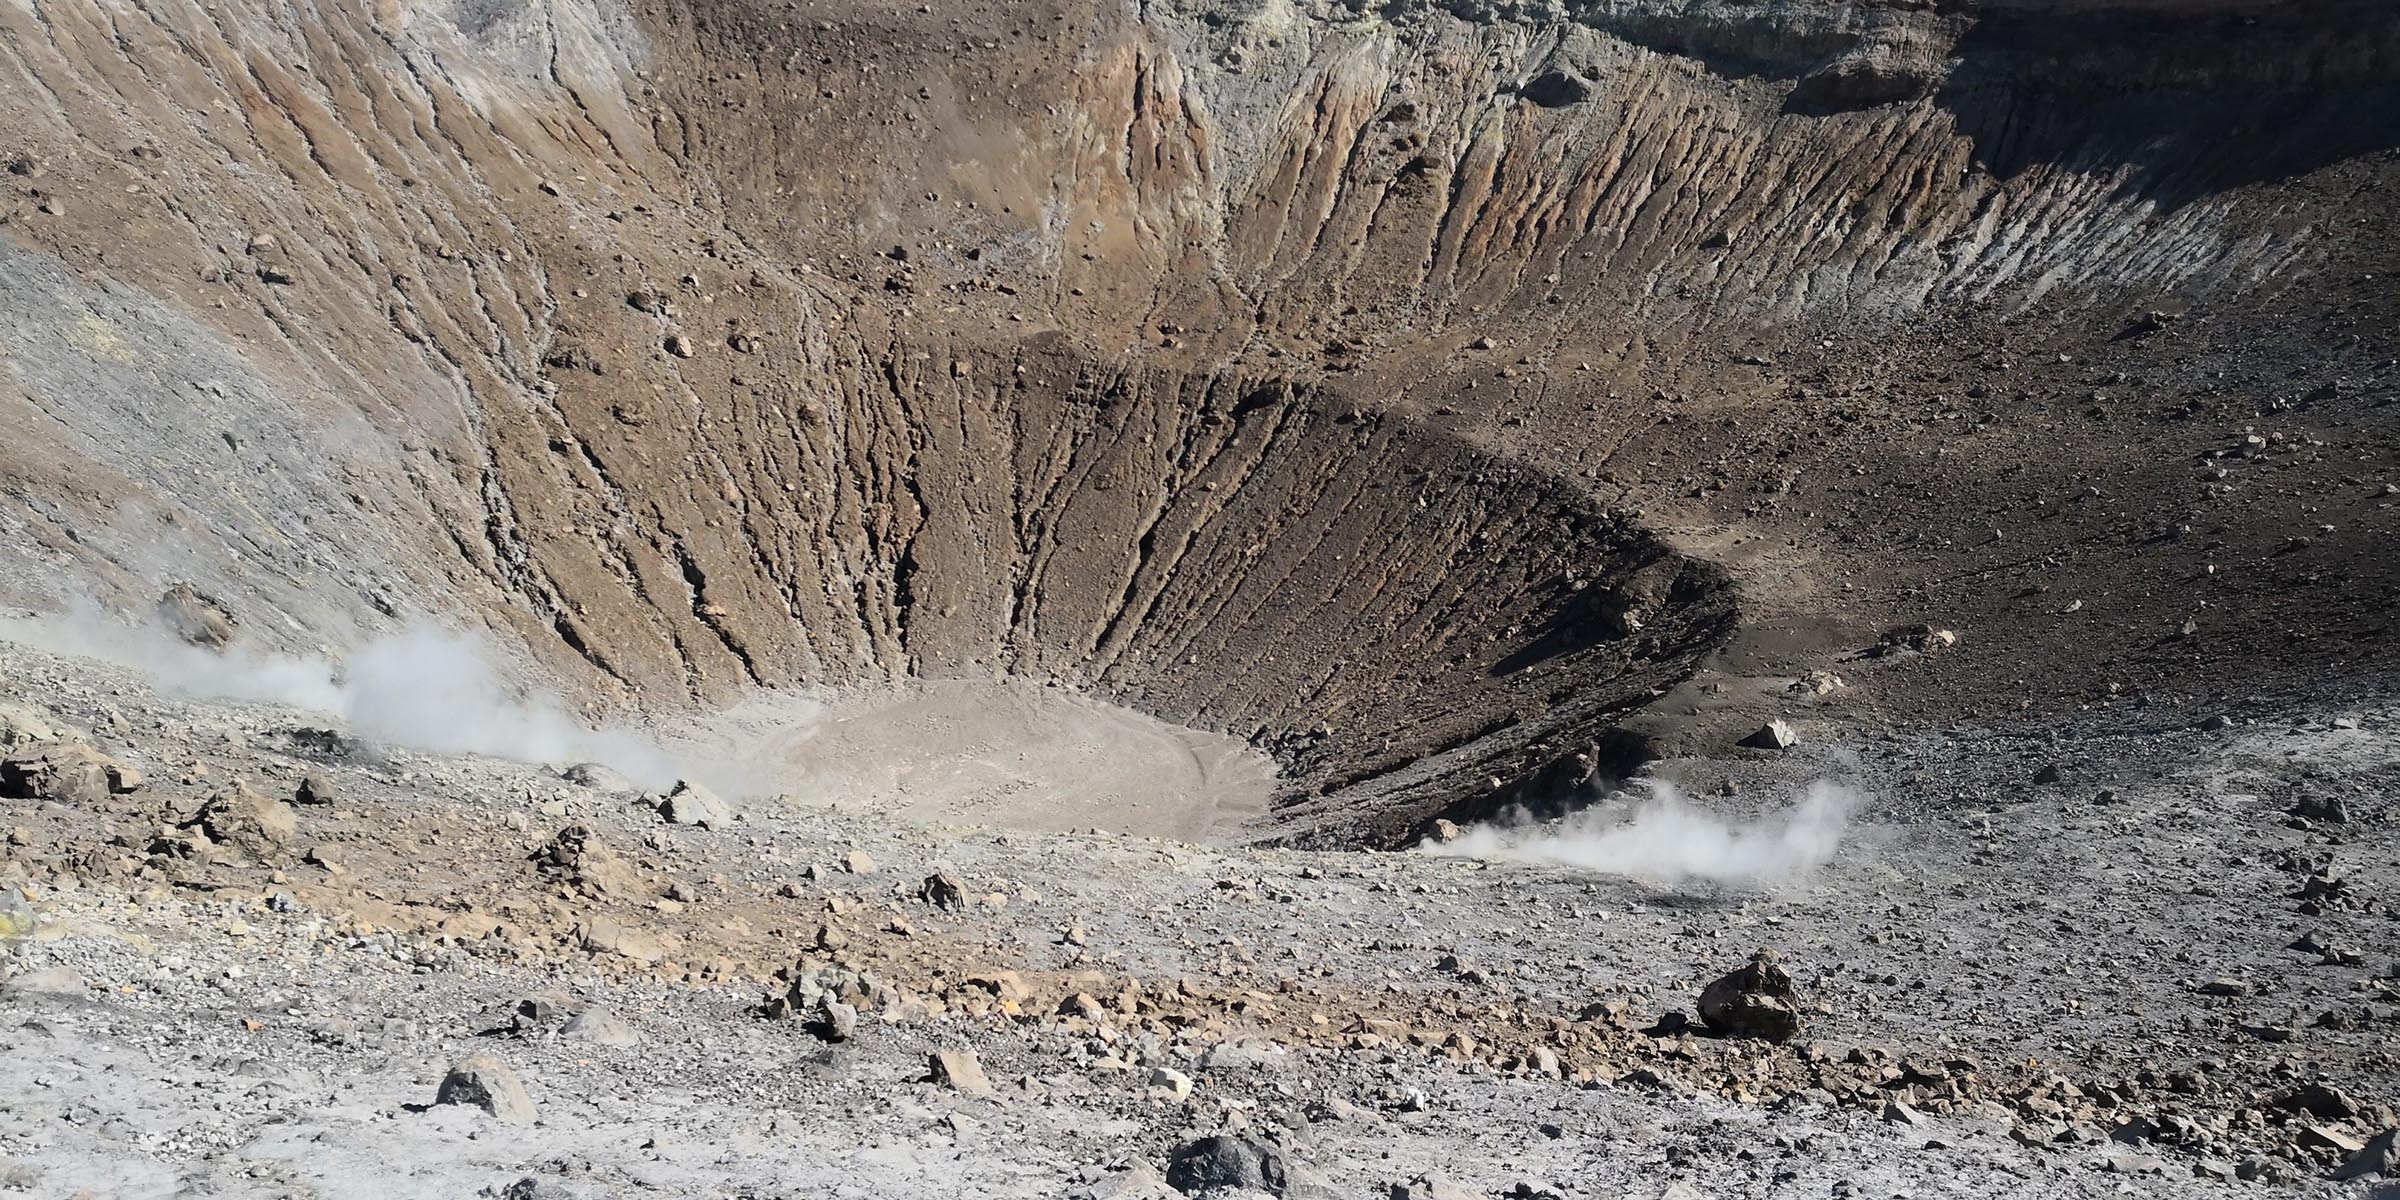 Vulcano - Isole Eolie, escursioni sul cratere